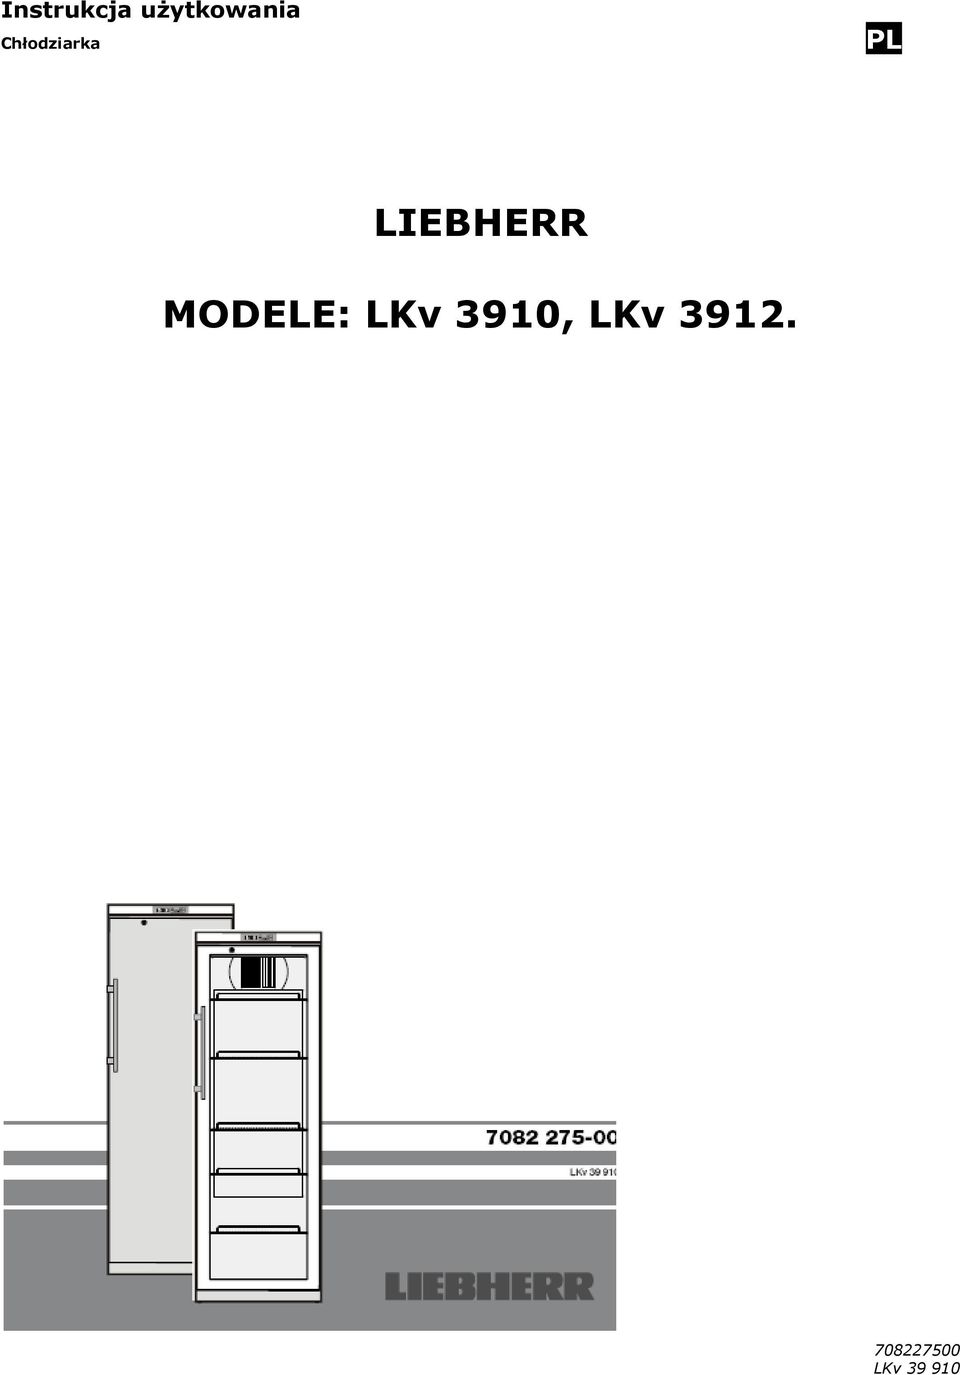 MODELE: LKv 3910, LKv